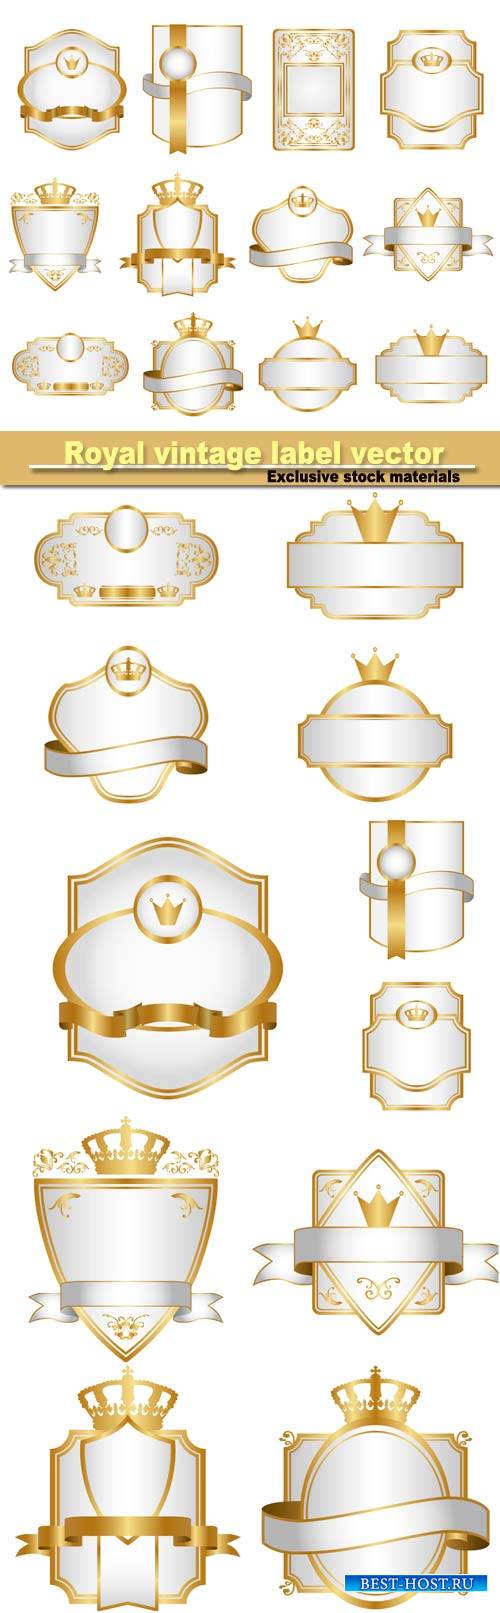 Royal vintage label vector set